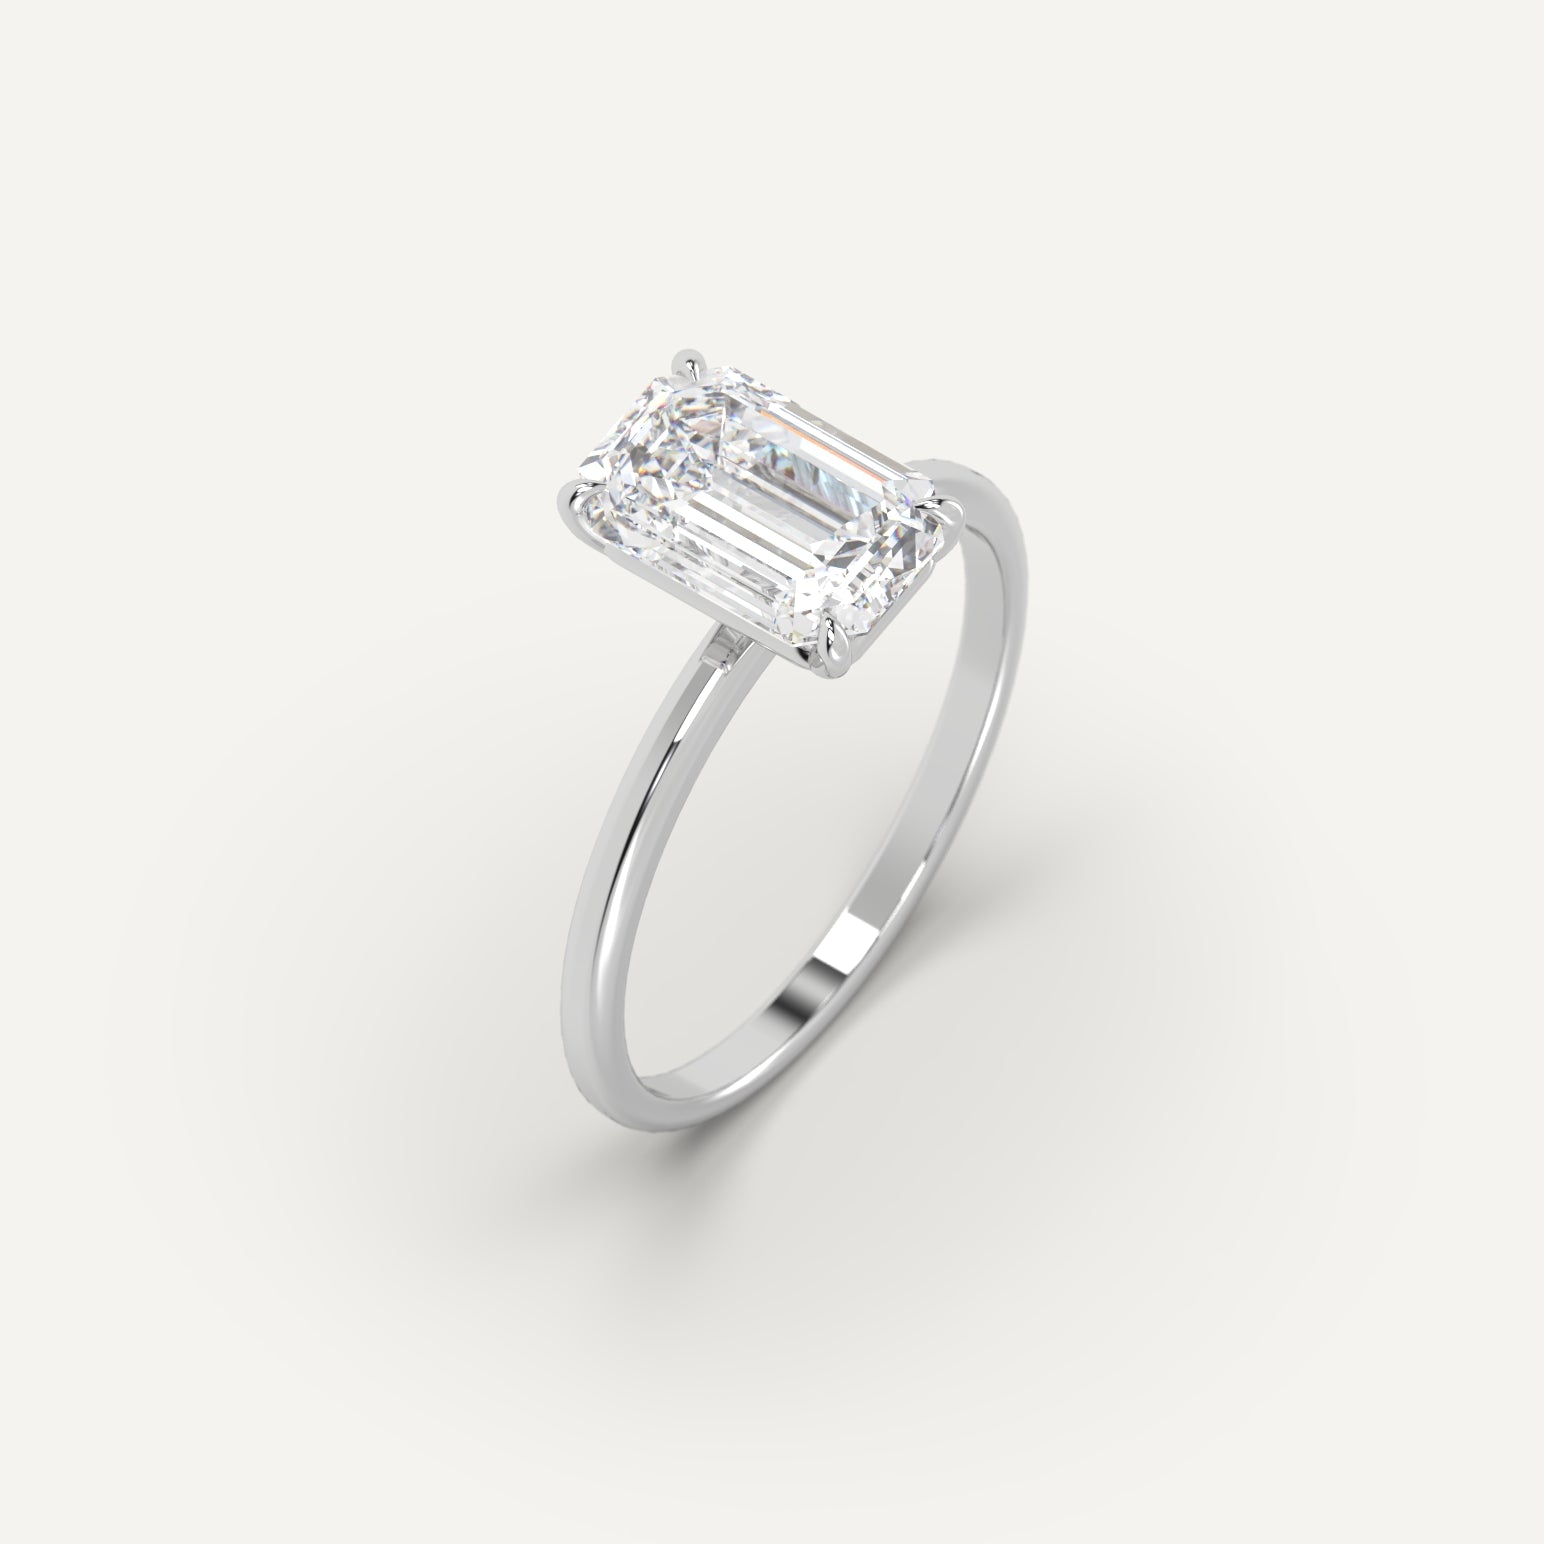 3 carat Emerald Cut Engagement Ring in 950 Platinum